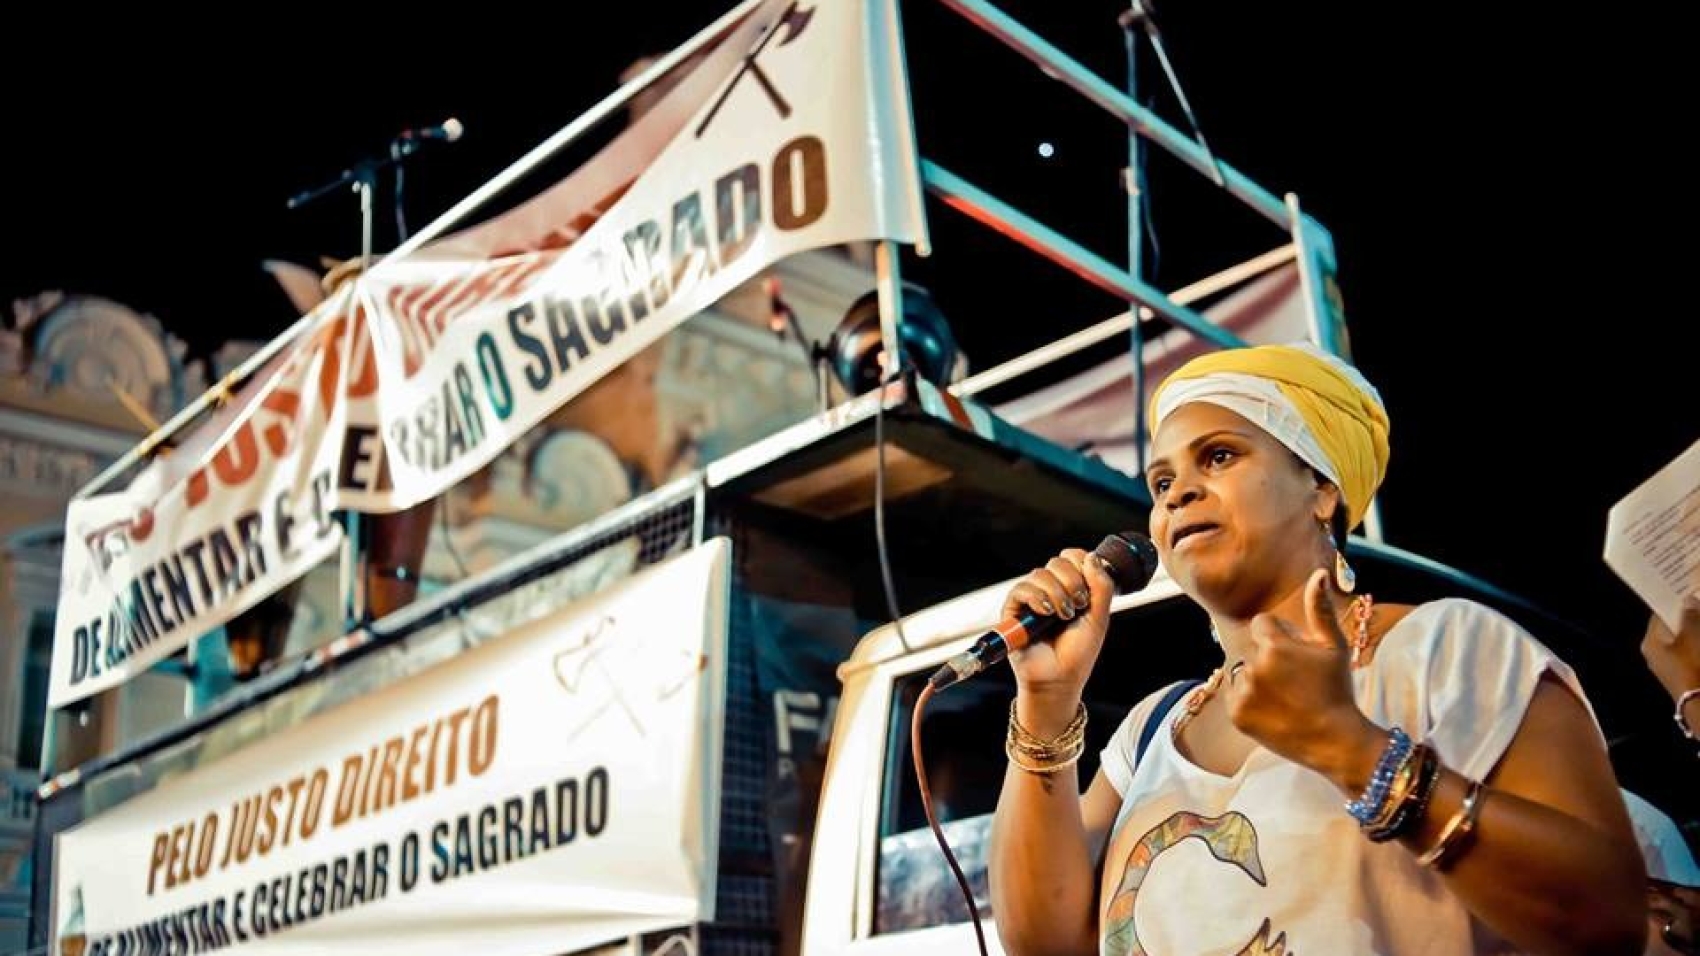 Ato Pelo Justo Direito de Alimentar e Celebrar o Sagrado em Salvador-BA. Foto: Adeloya Magnony